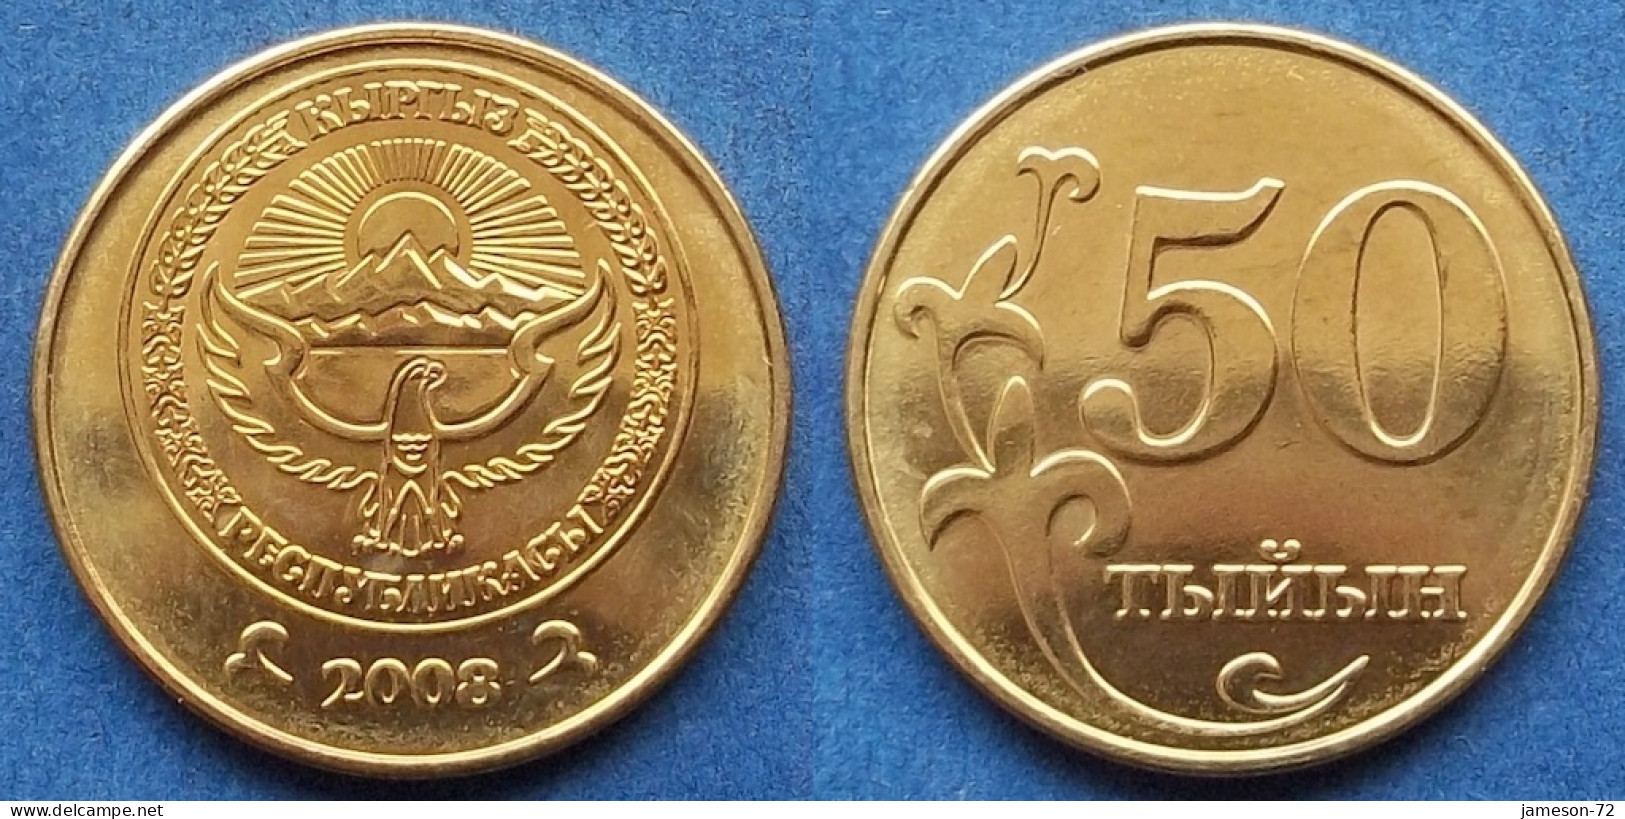 KYRGYZSTAN - 50 Tiyin 2008 KM# 13 Independent Republic (1991) - Edelweiss Coins - Kyrgyzstan